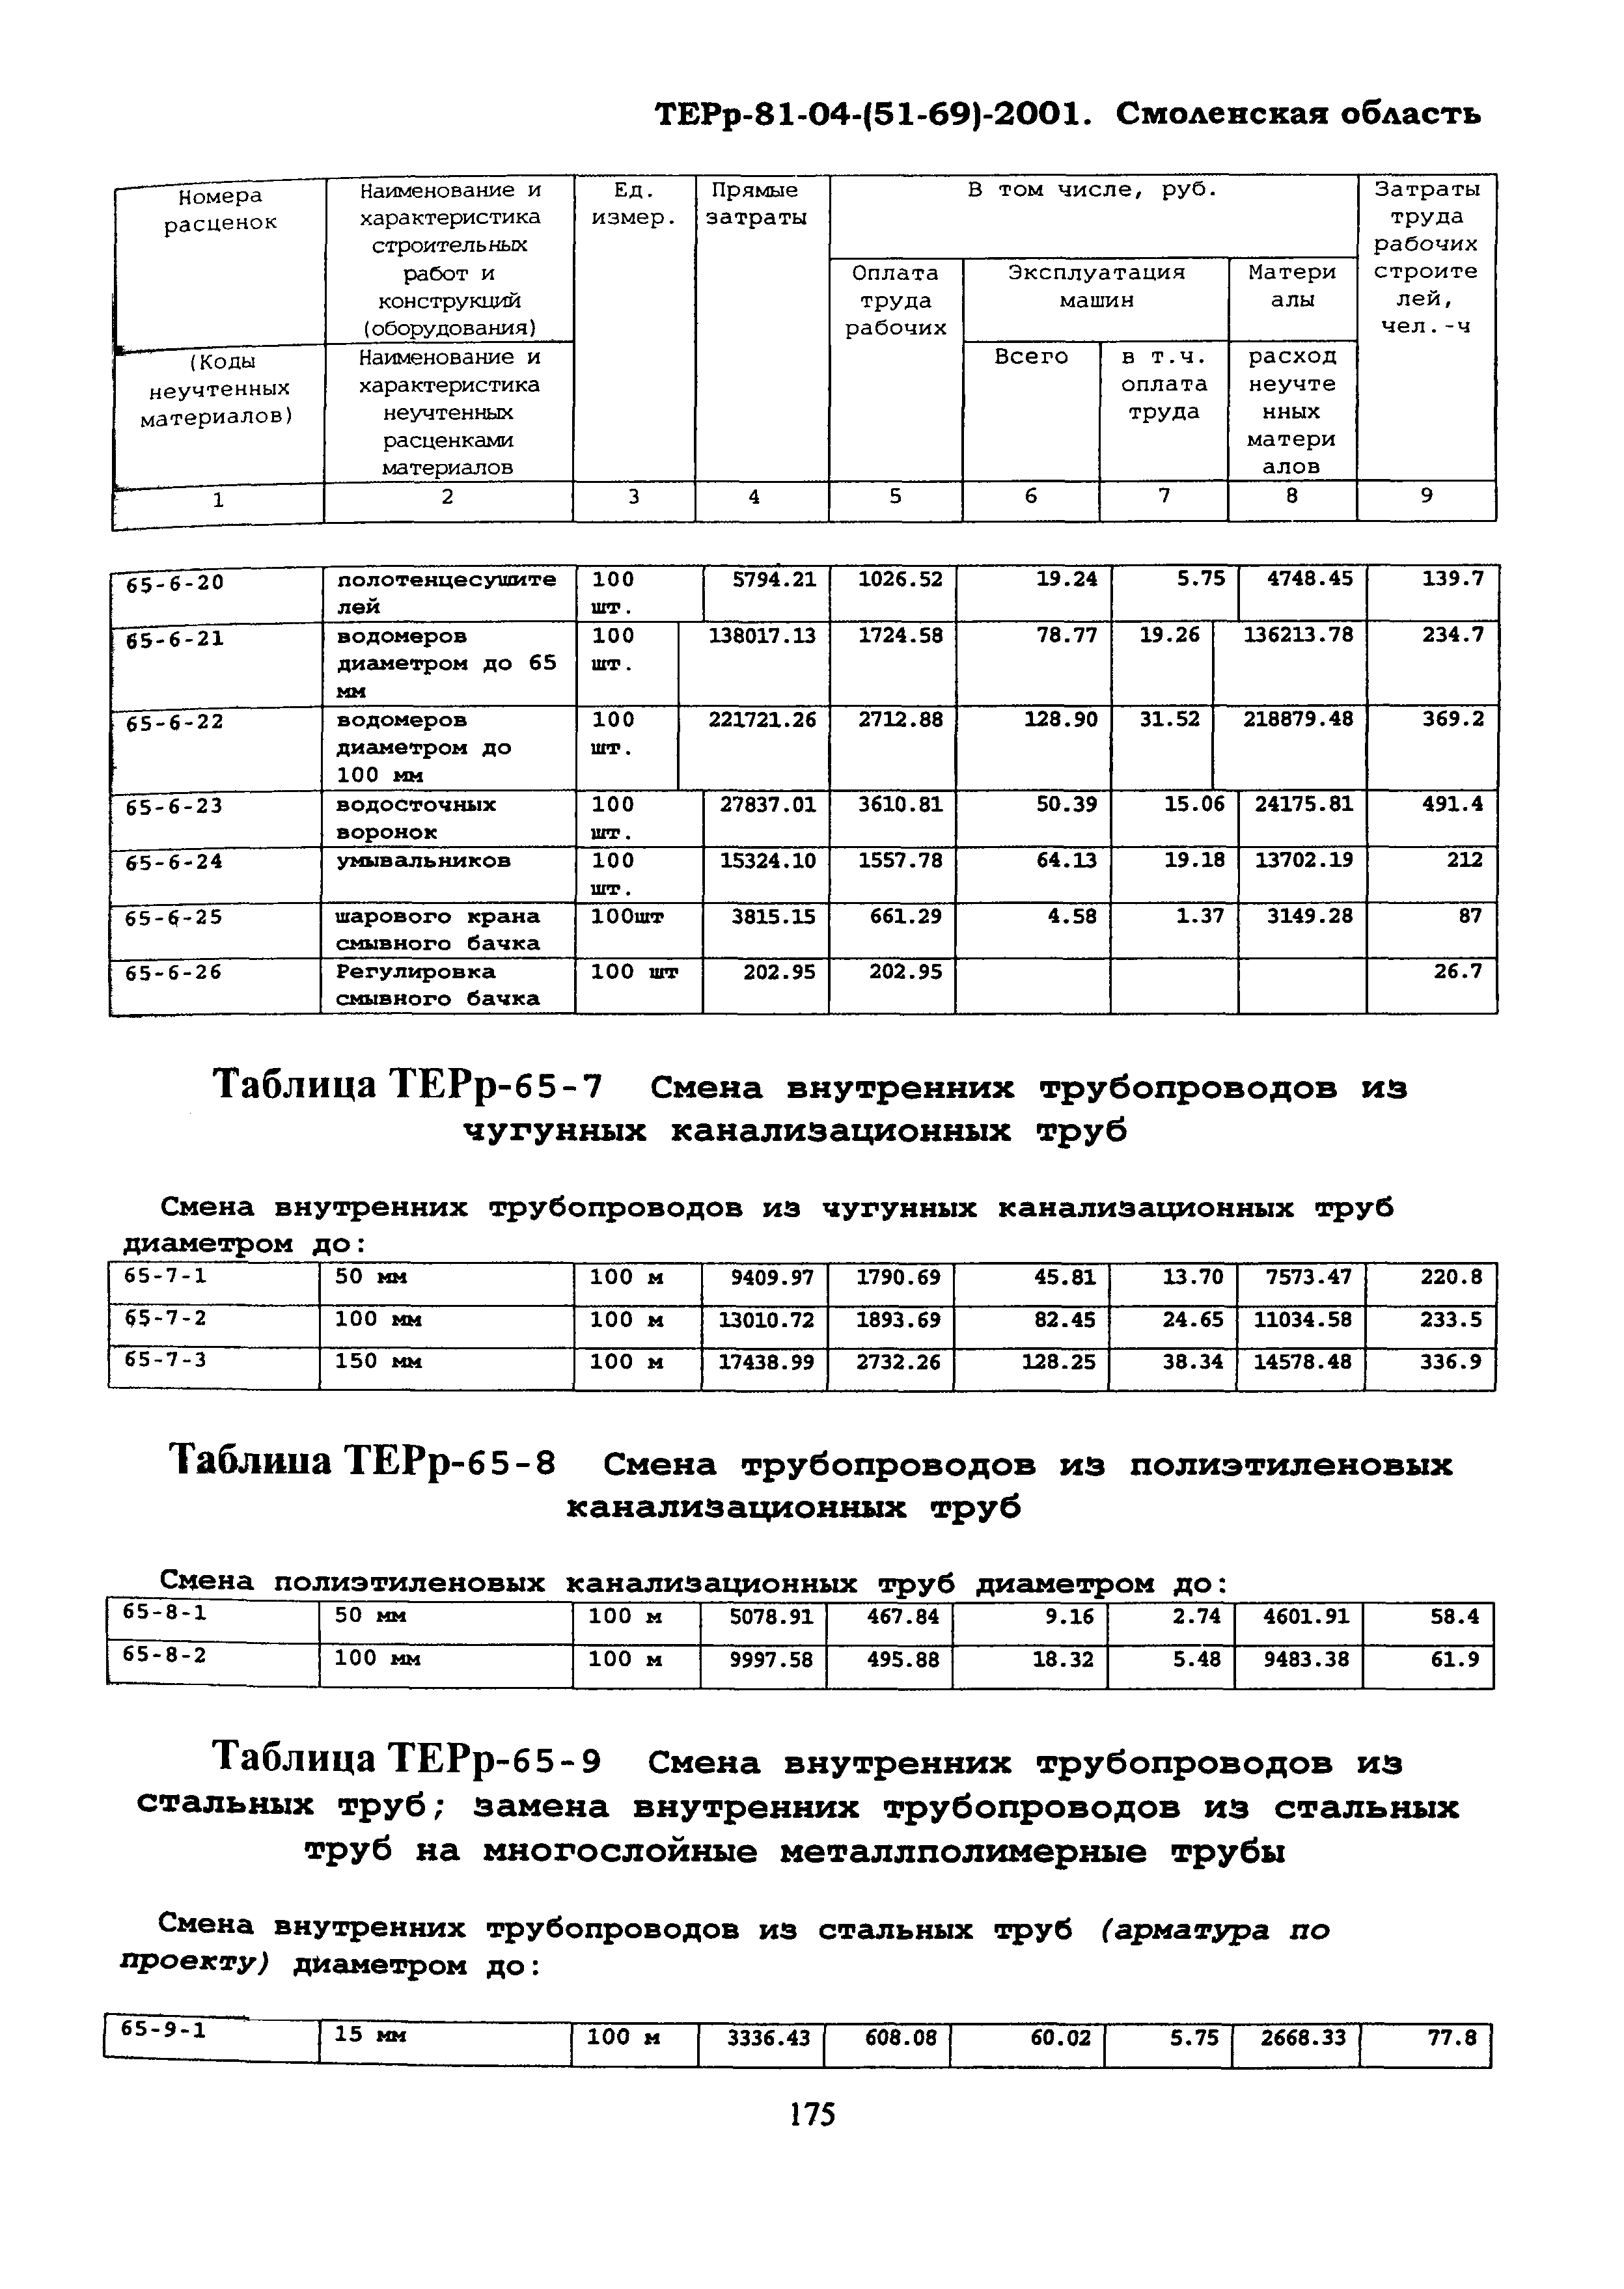 ТЕРр Смоленской области 2001-65